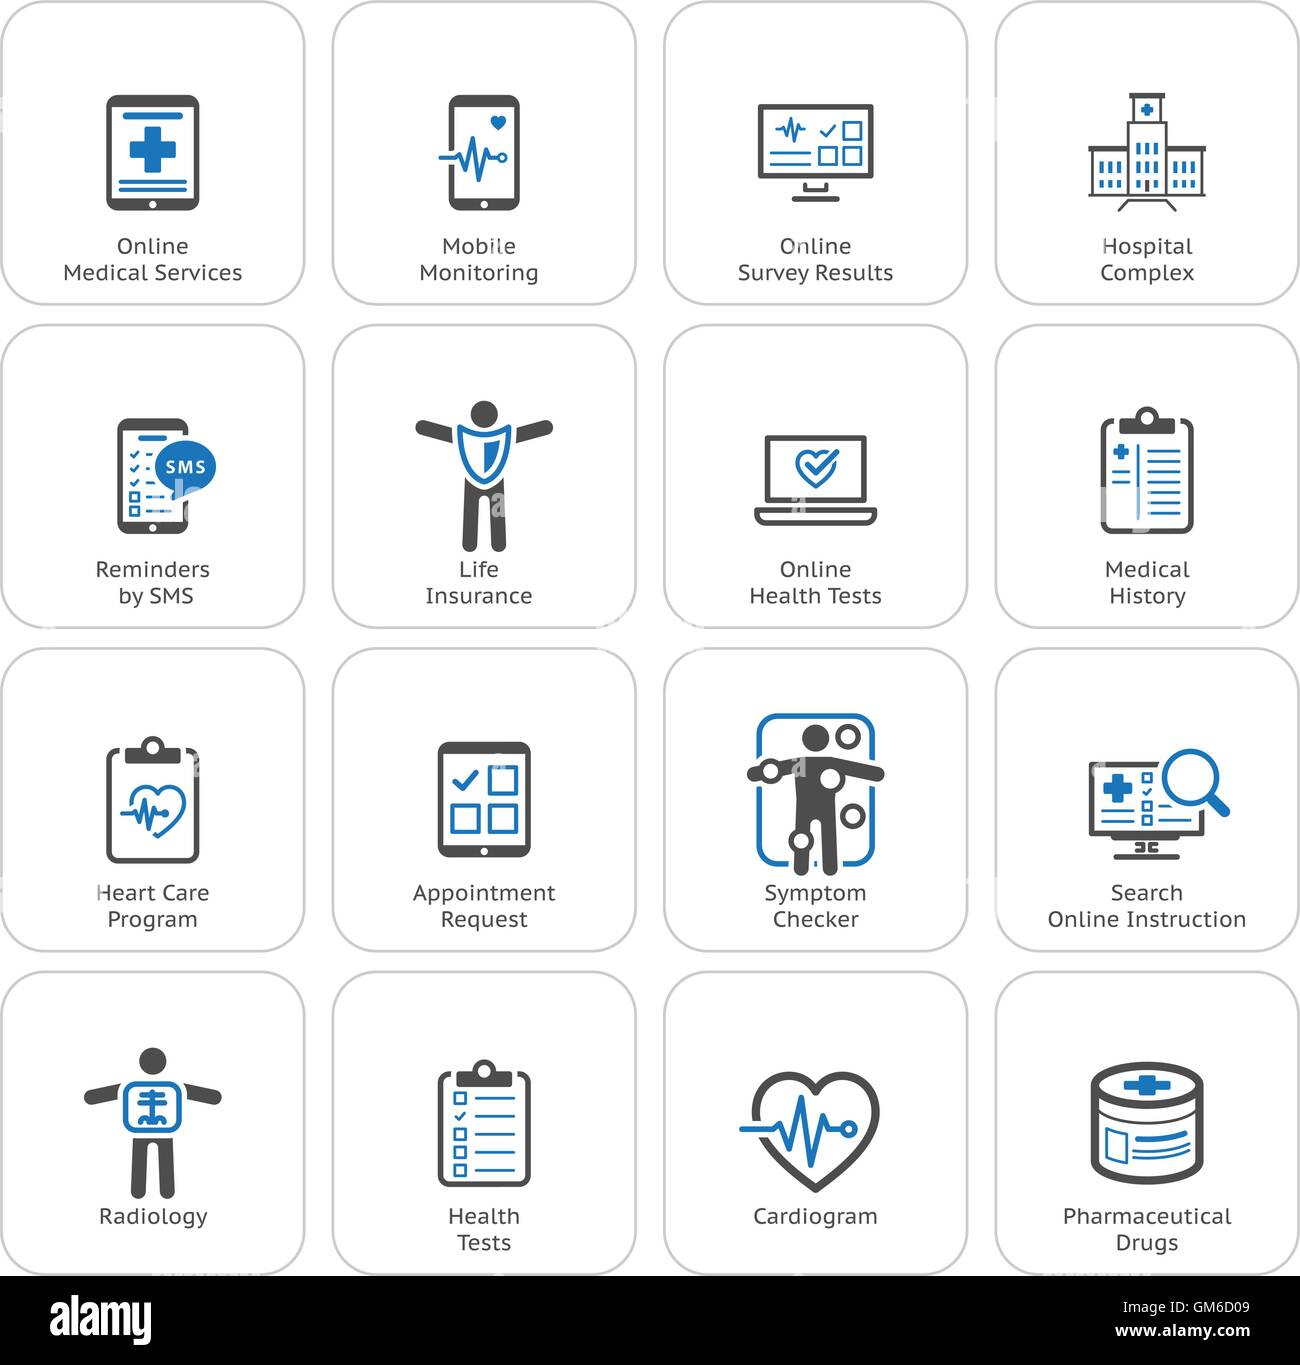 Medizinische & Gesundheitsversorgung Icons Set. Flaches Design. Stock Vektor